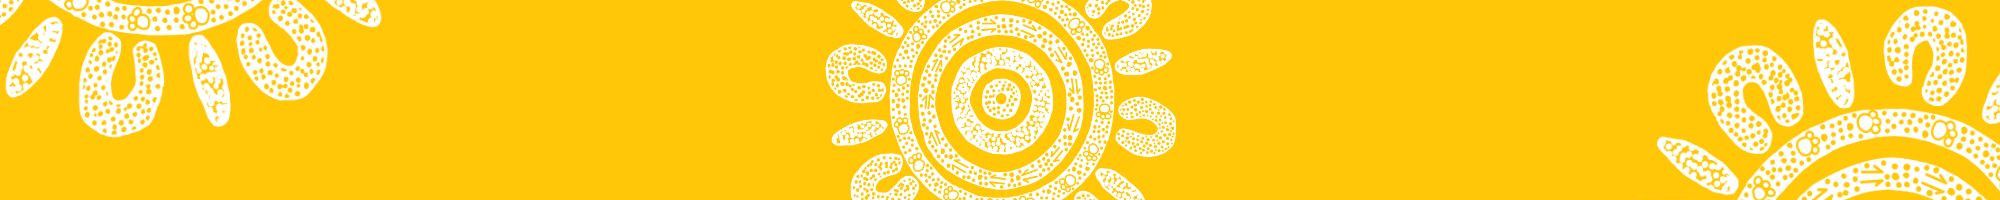 circular sun dot art pattern